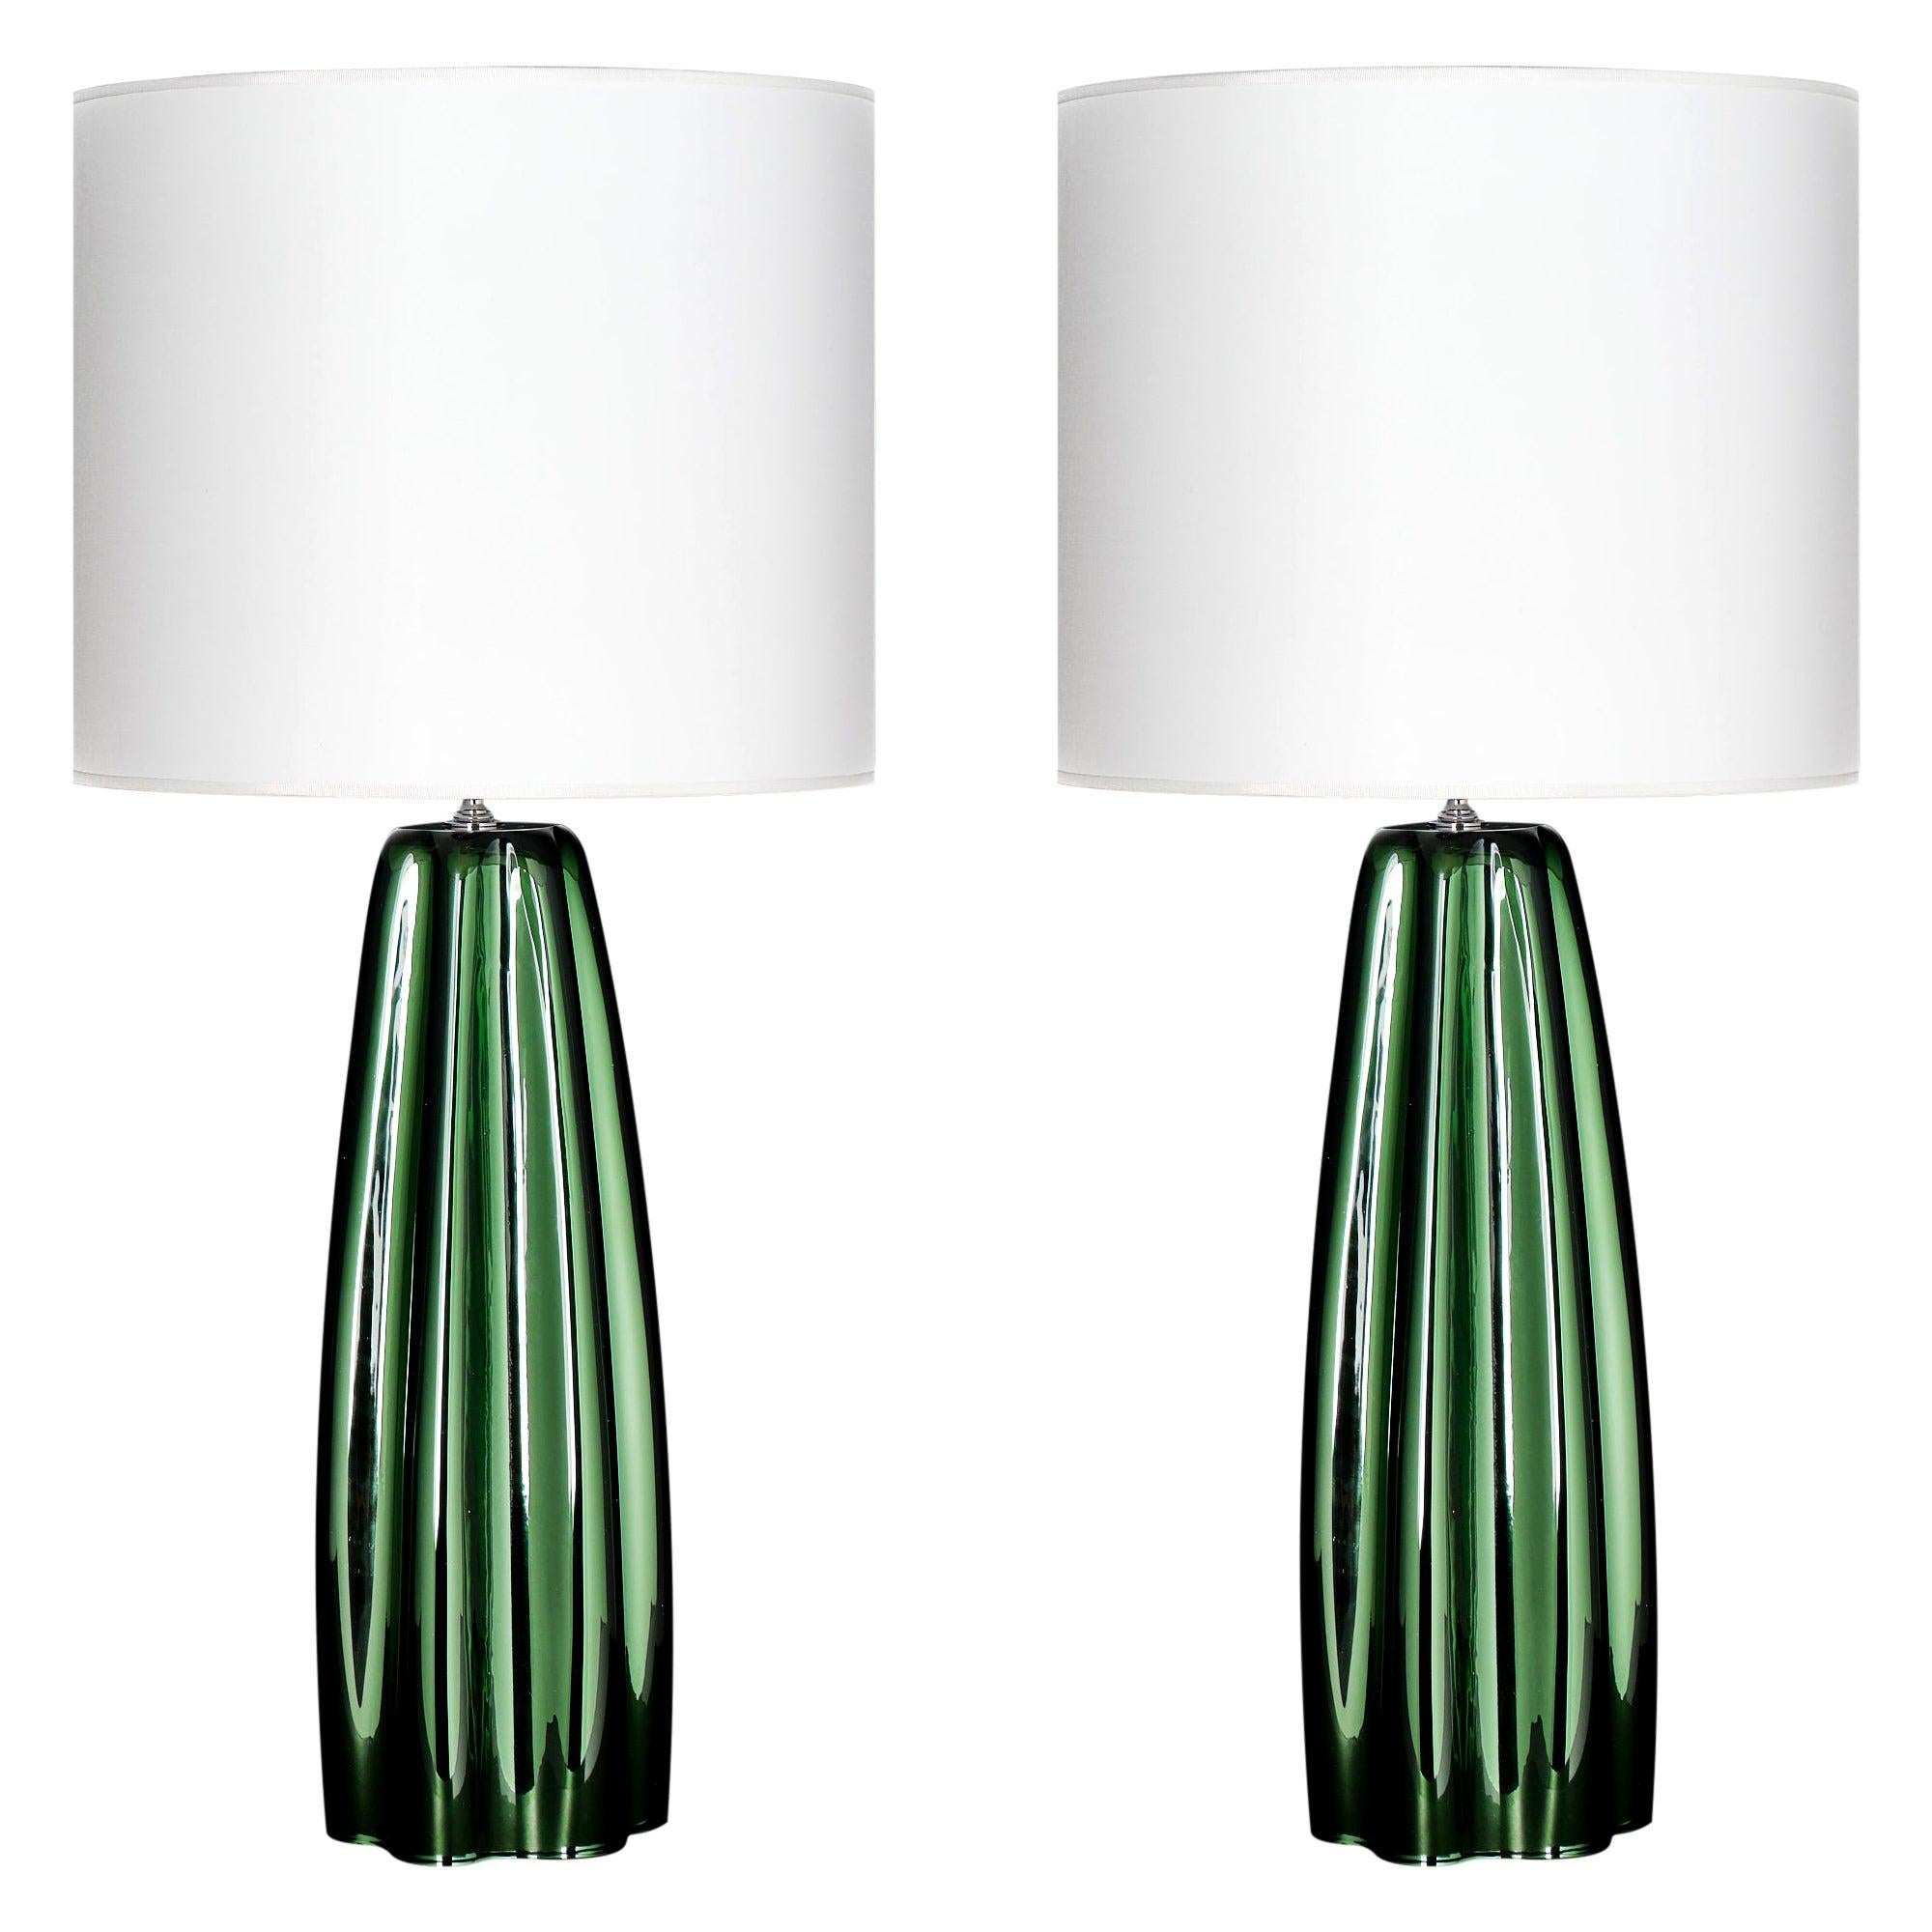 Lámparas verdes con espejo de cristal de Murano